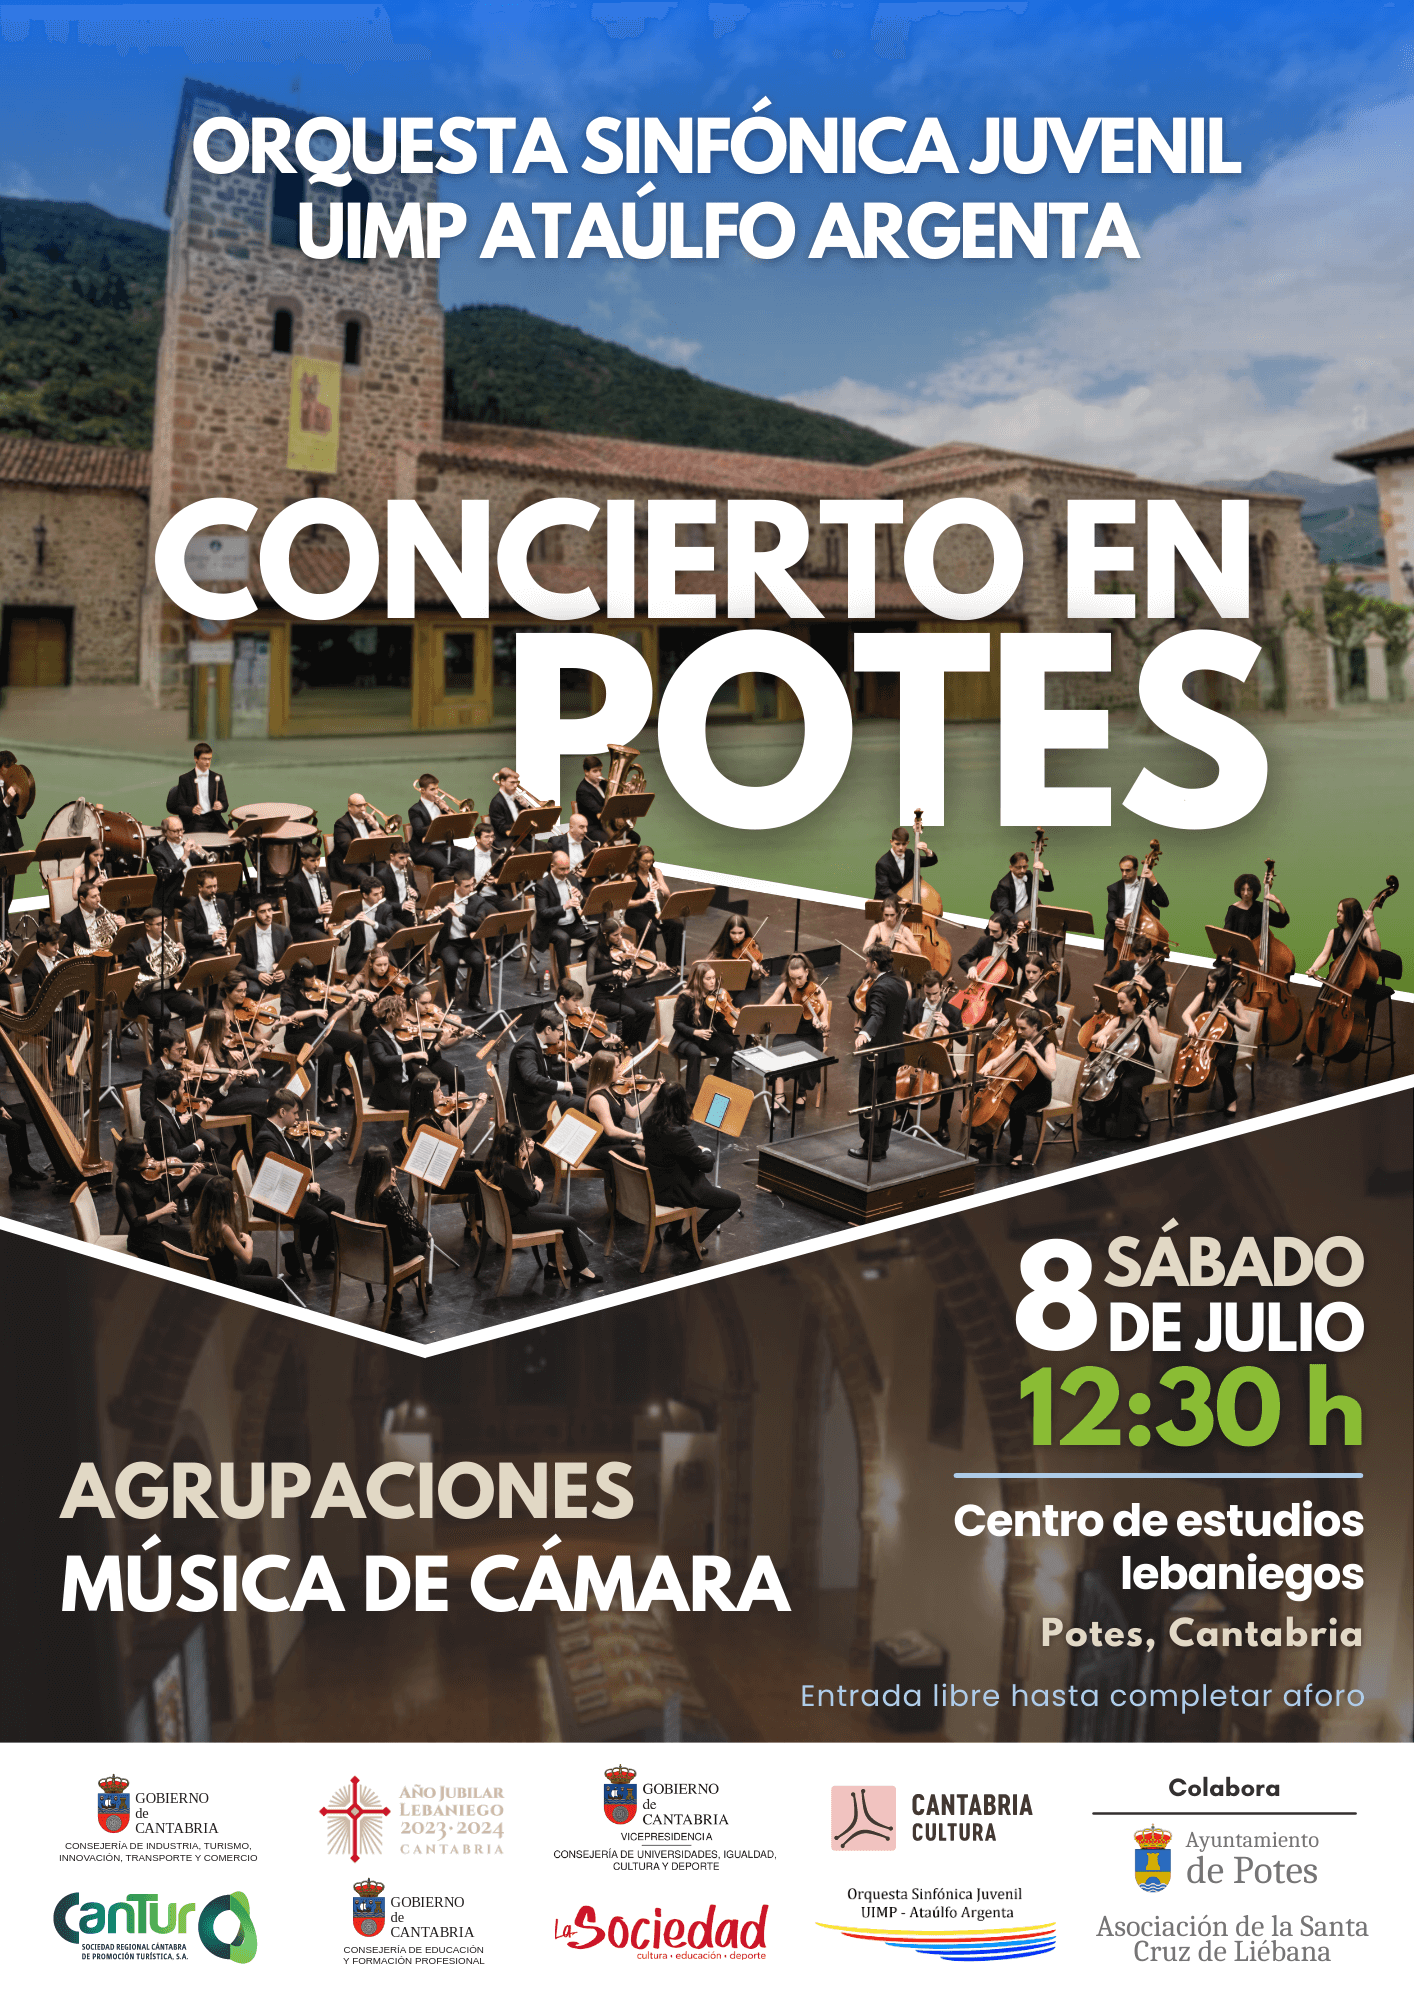 Concierto en Potes – Orquesta Sinfónica Juvenil UIMP Ataúlfo Argenta